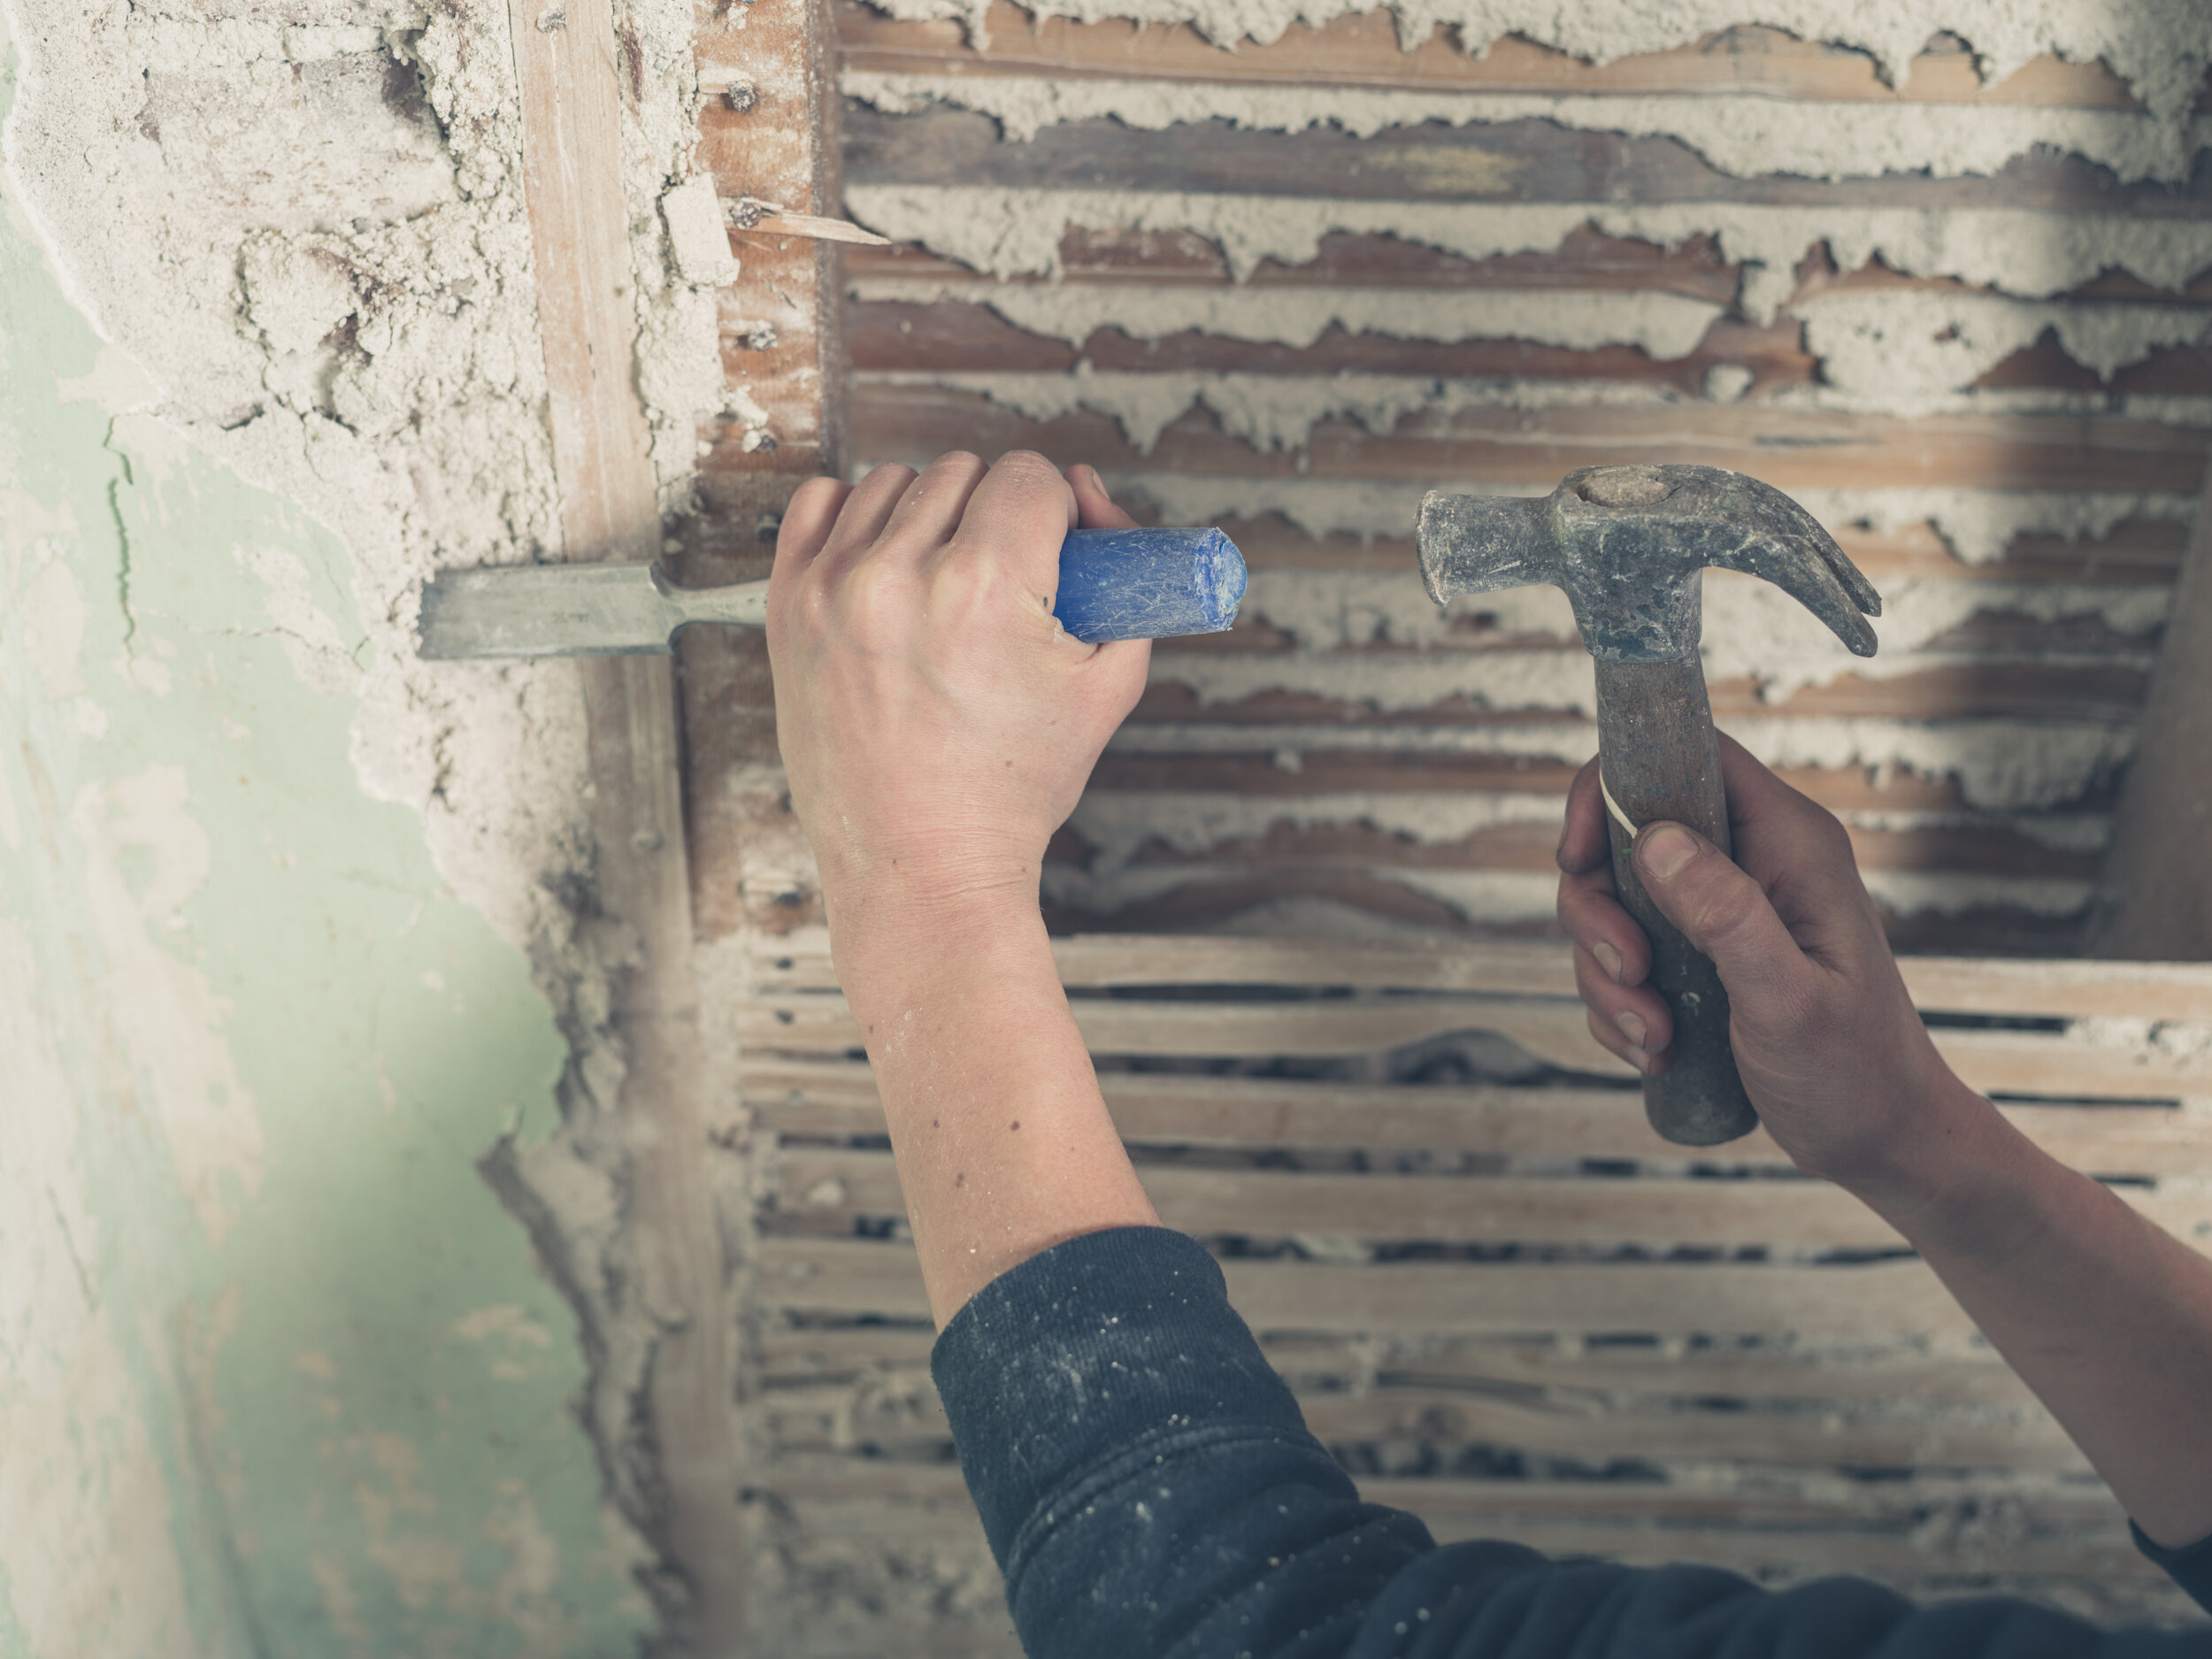 Демонтаж штукатурки: как снять декоративное покрытие со стен, как убрать старую штукатурку, как очистить поверхность от шпаклевки